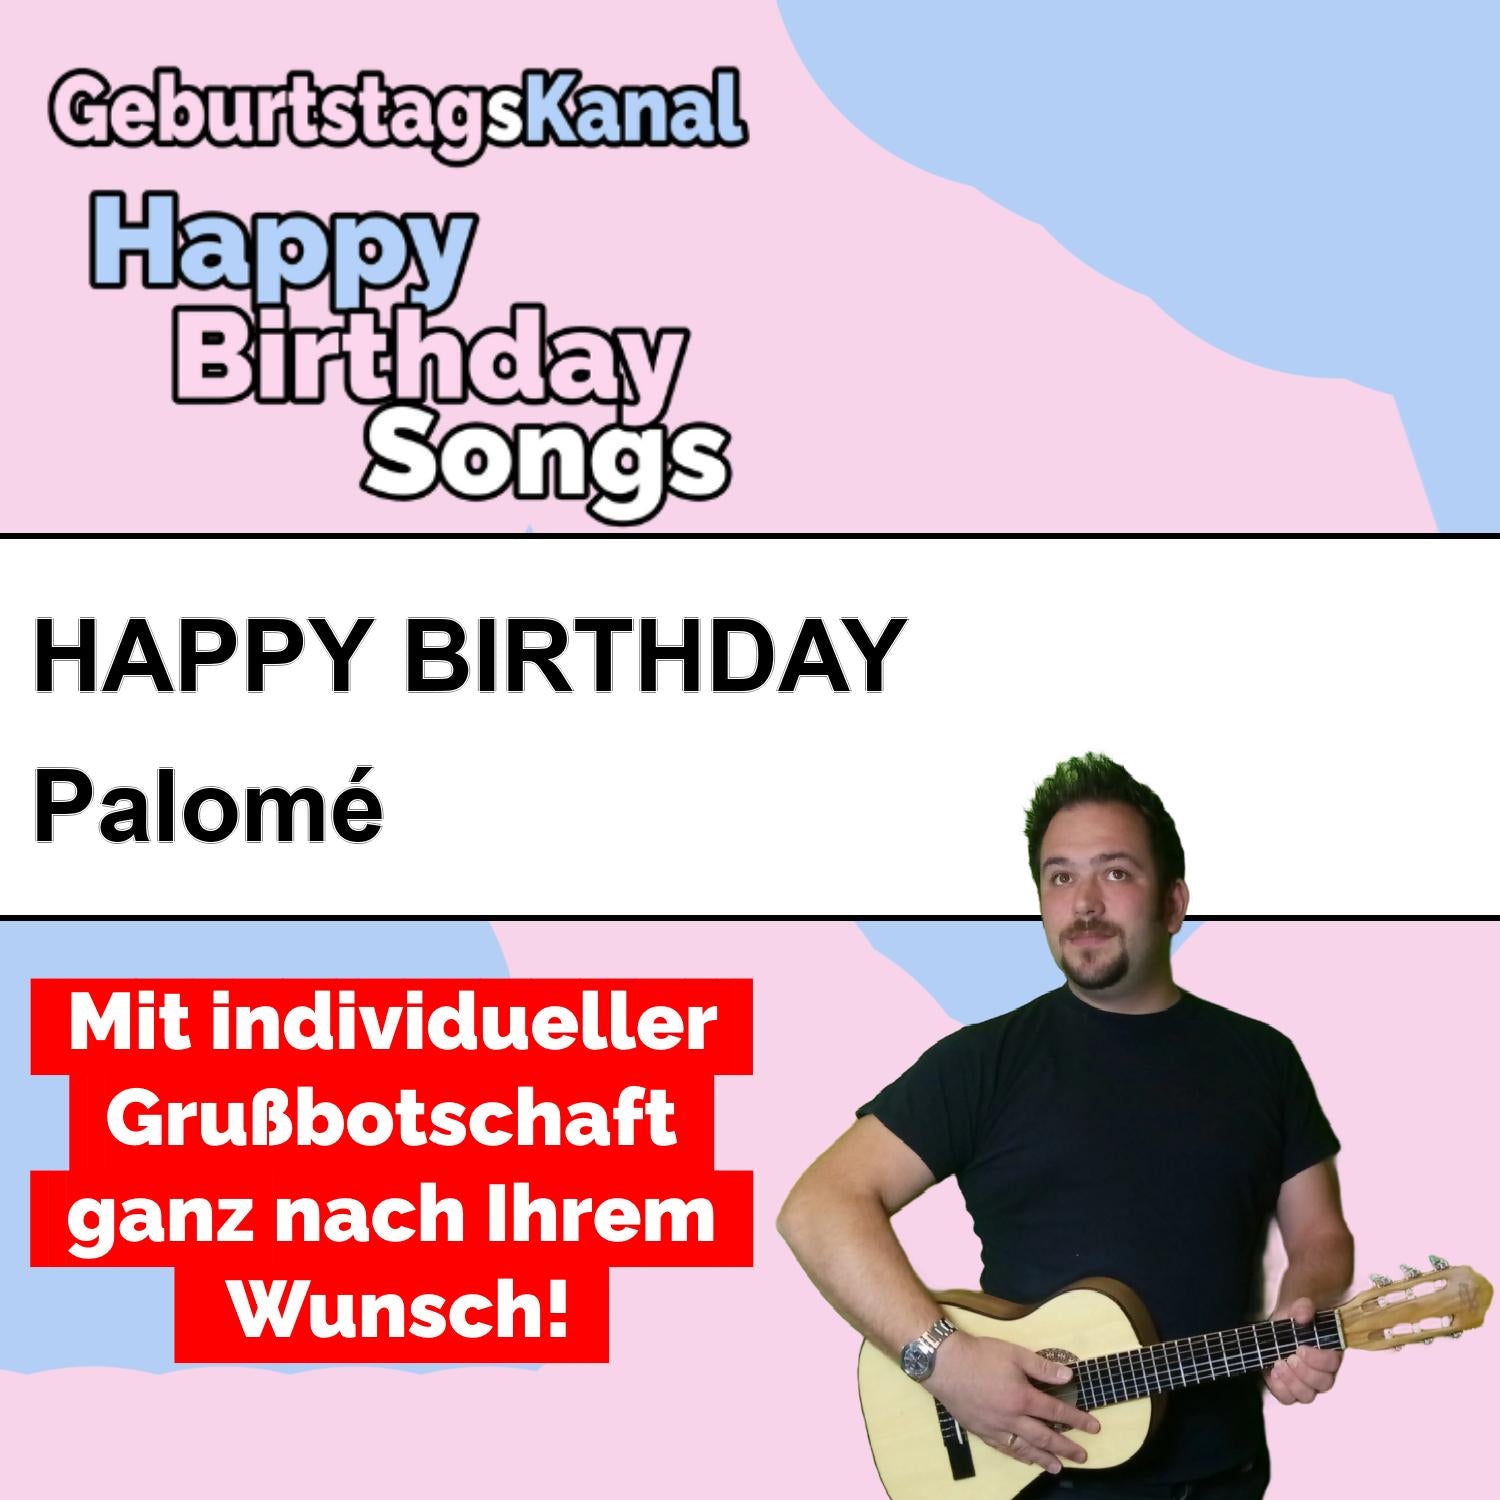 Produktbild Happy Birthday to you Palomé mit Wunschgrußbotschaft